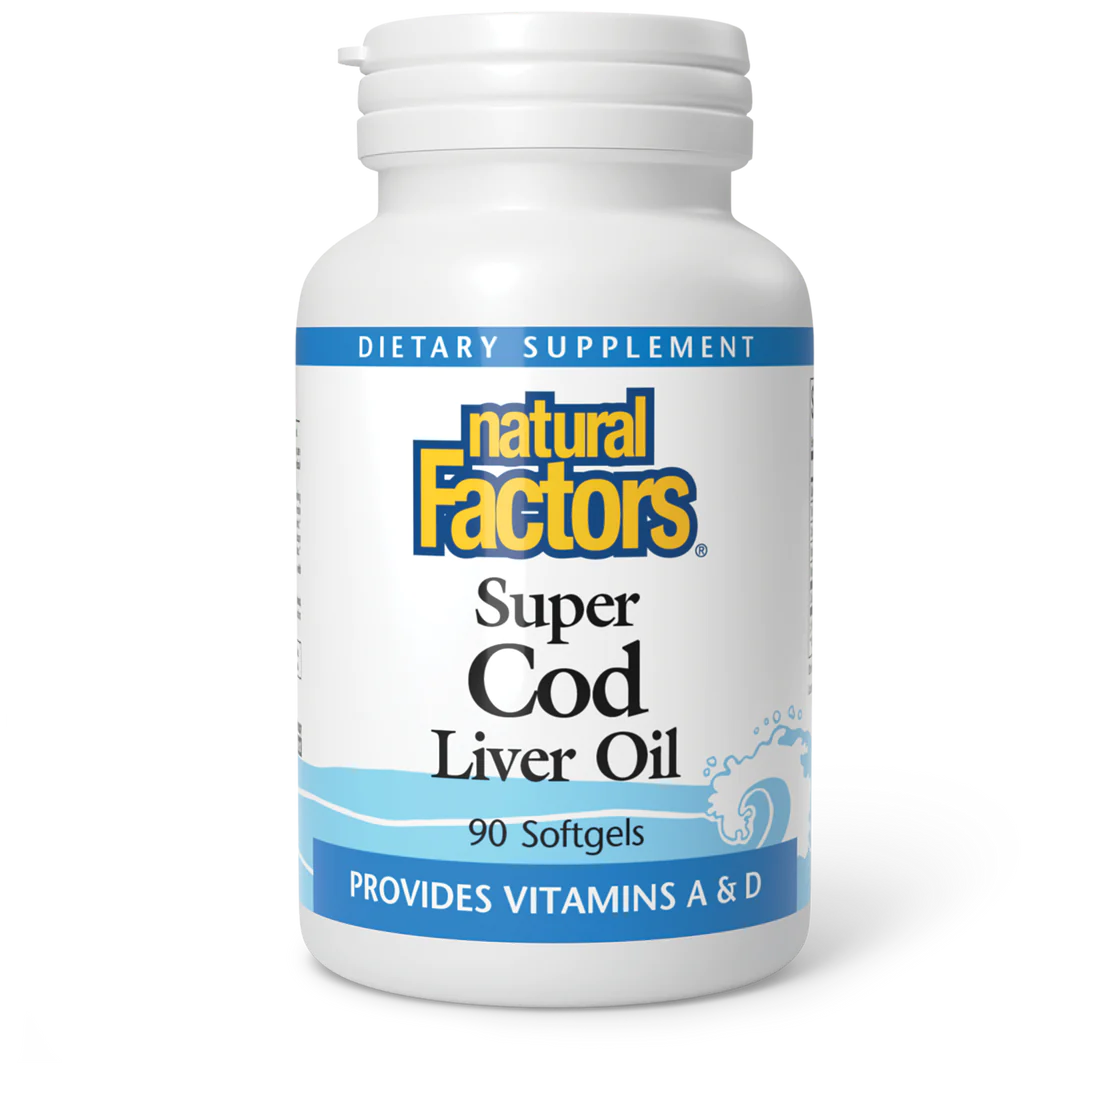 Super Cod Liver Oil by Natural Factors, 90 softgels